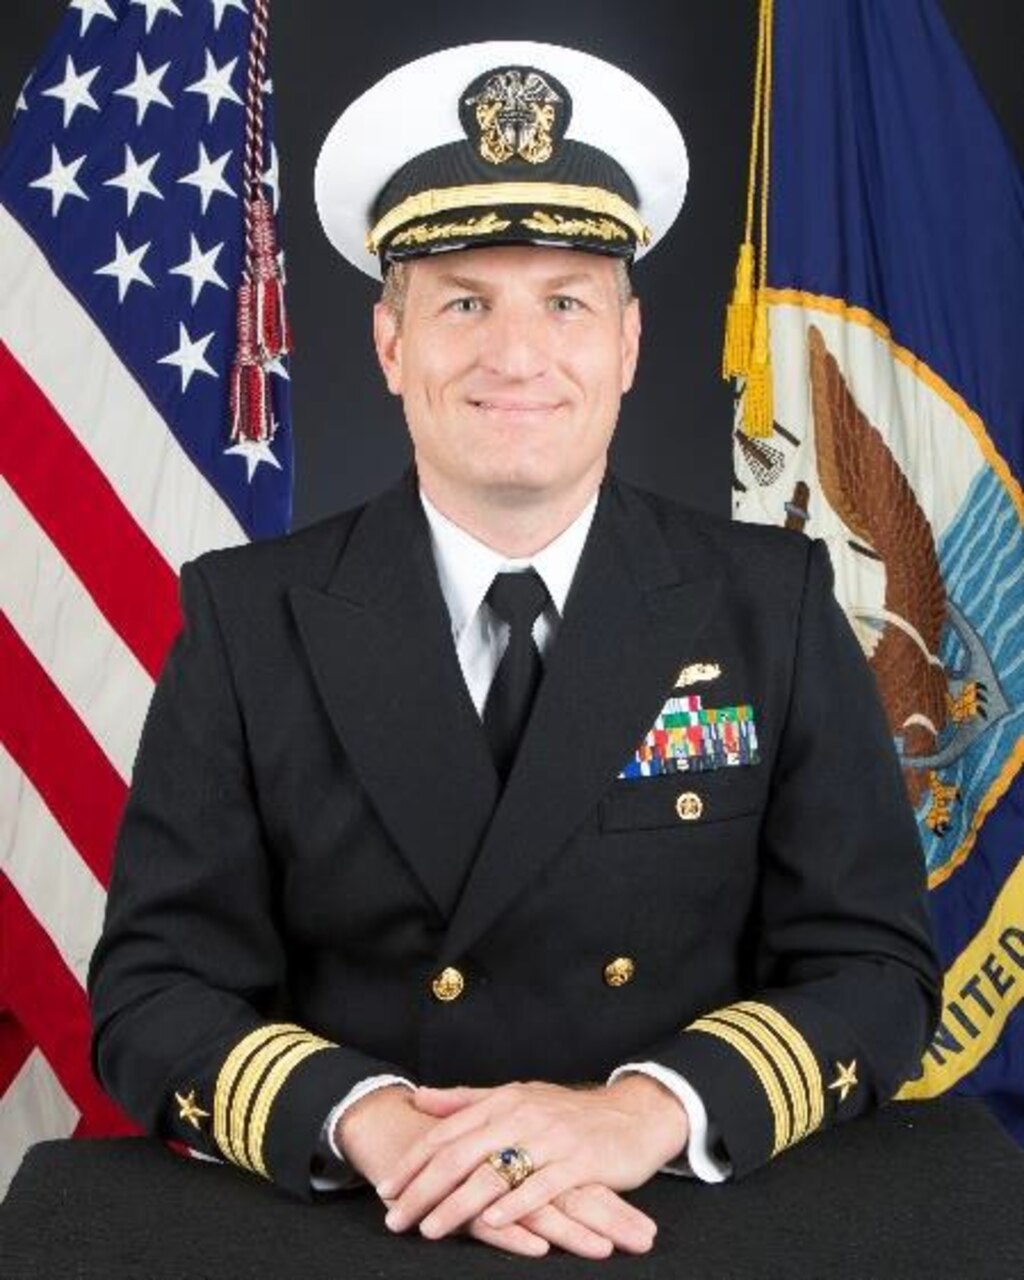 Commander Michael Tyree